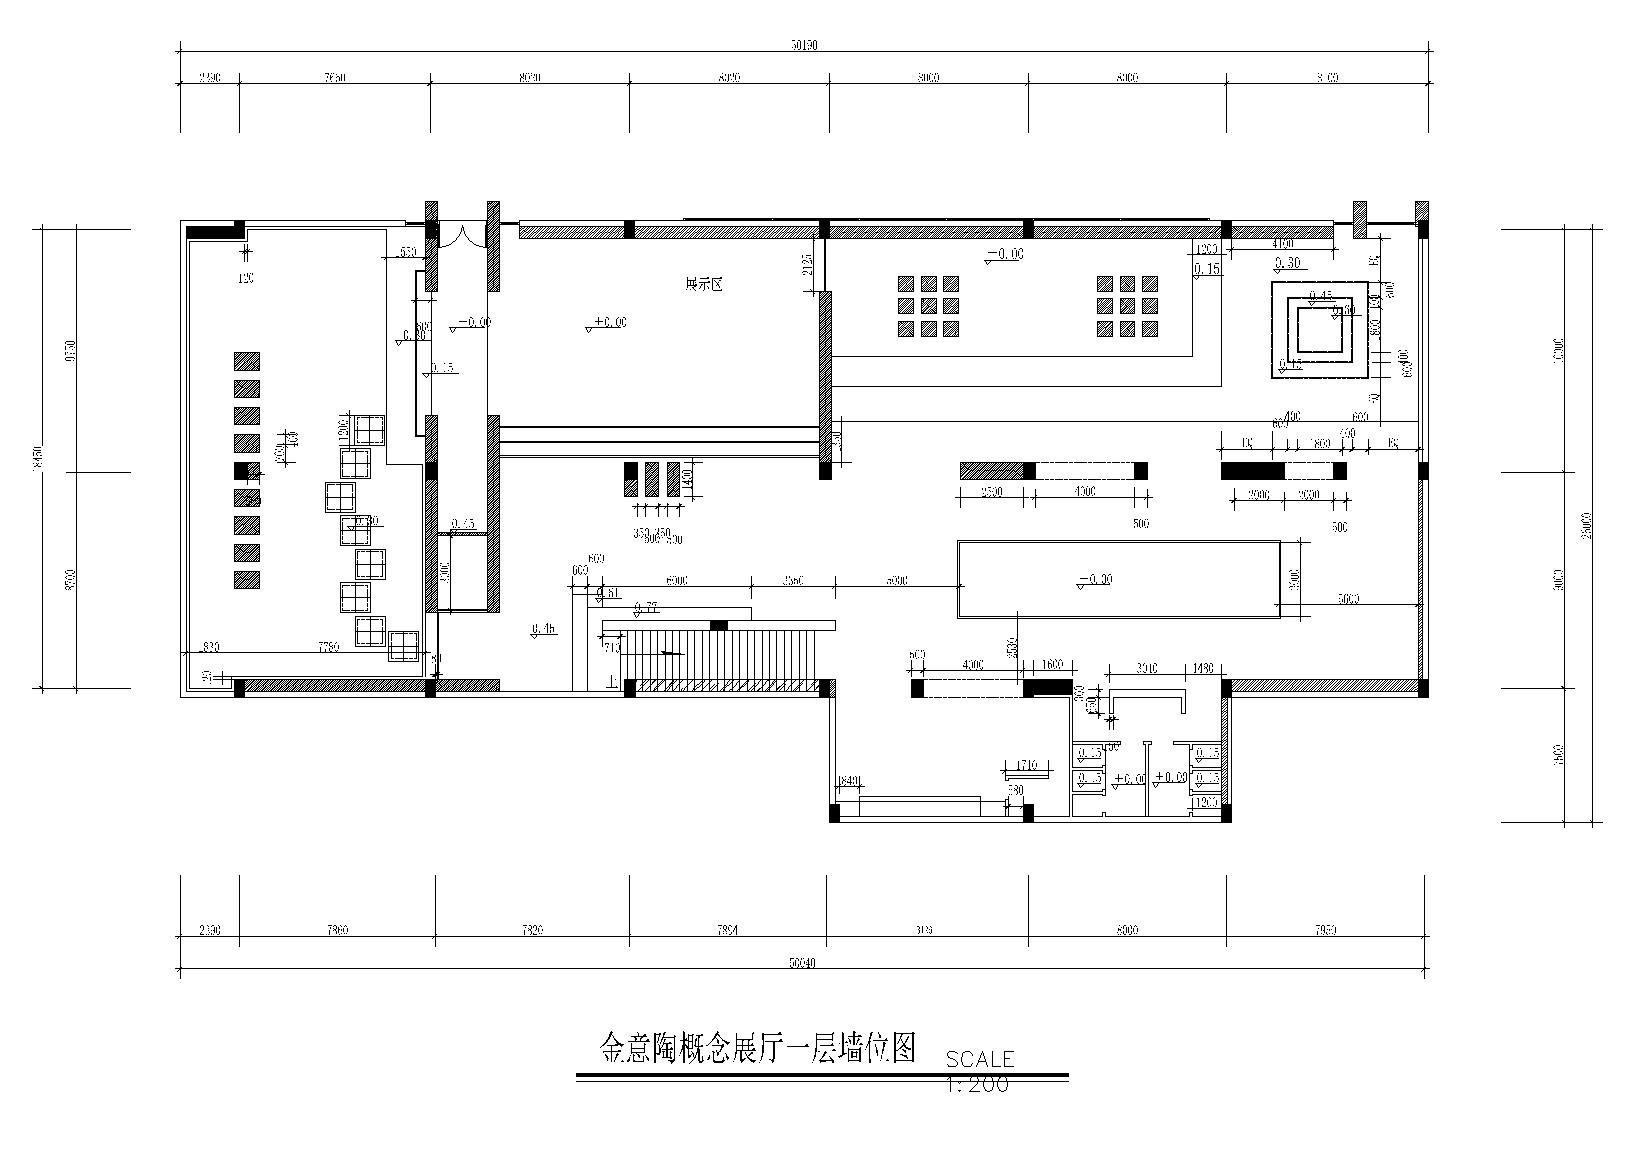 KITO某概念展厅艺术思想馆施工图+建筑外观-隔墙尺寸图10